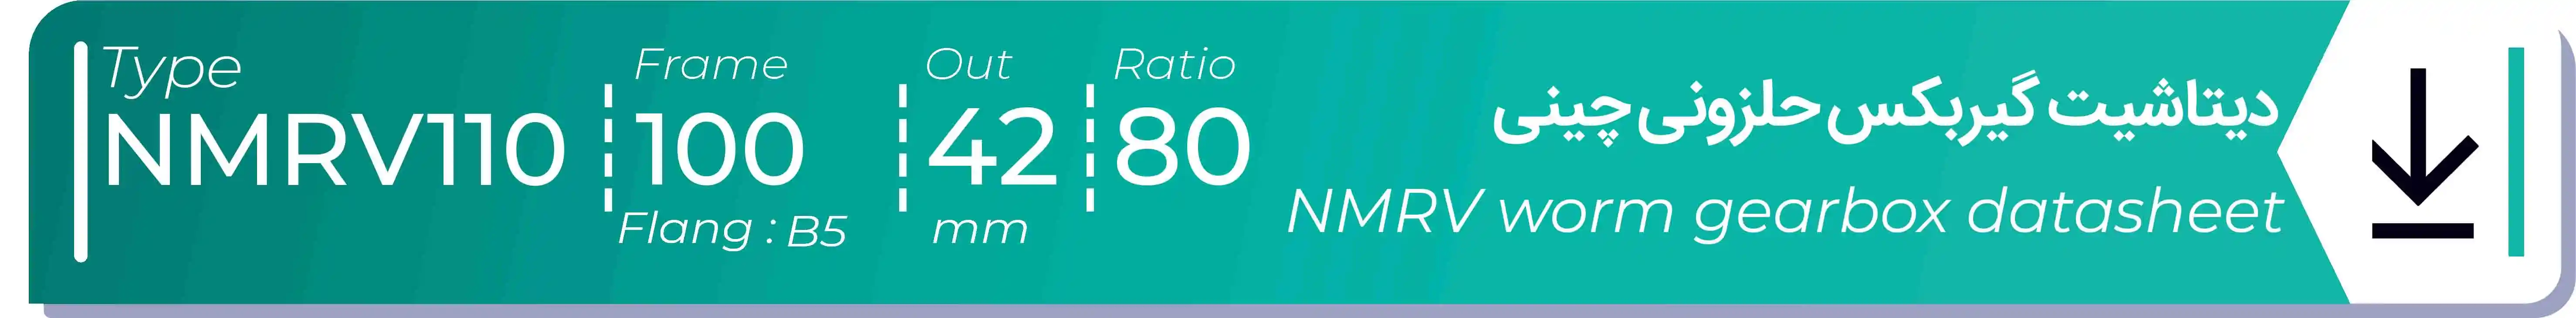  دیتاشیت و مشخصات فنی گیربکس حلزونی چینی   NMRV110  -  با خروجی 42- میلی متر و نسبت80 و فریم 100